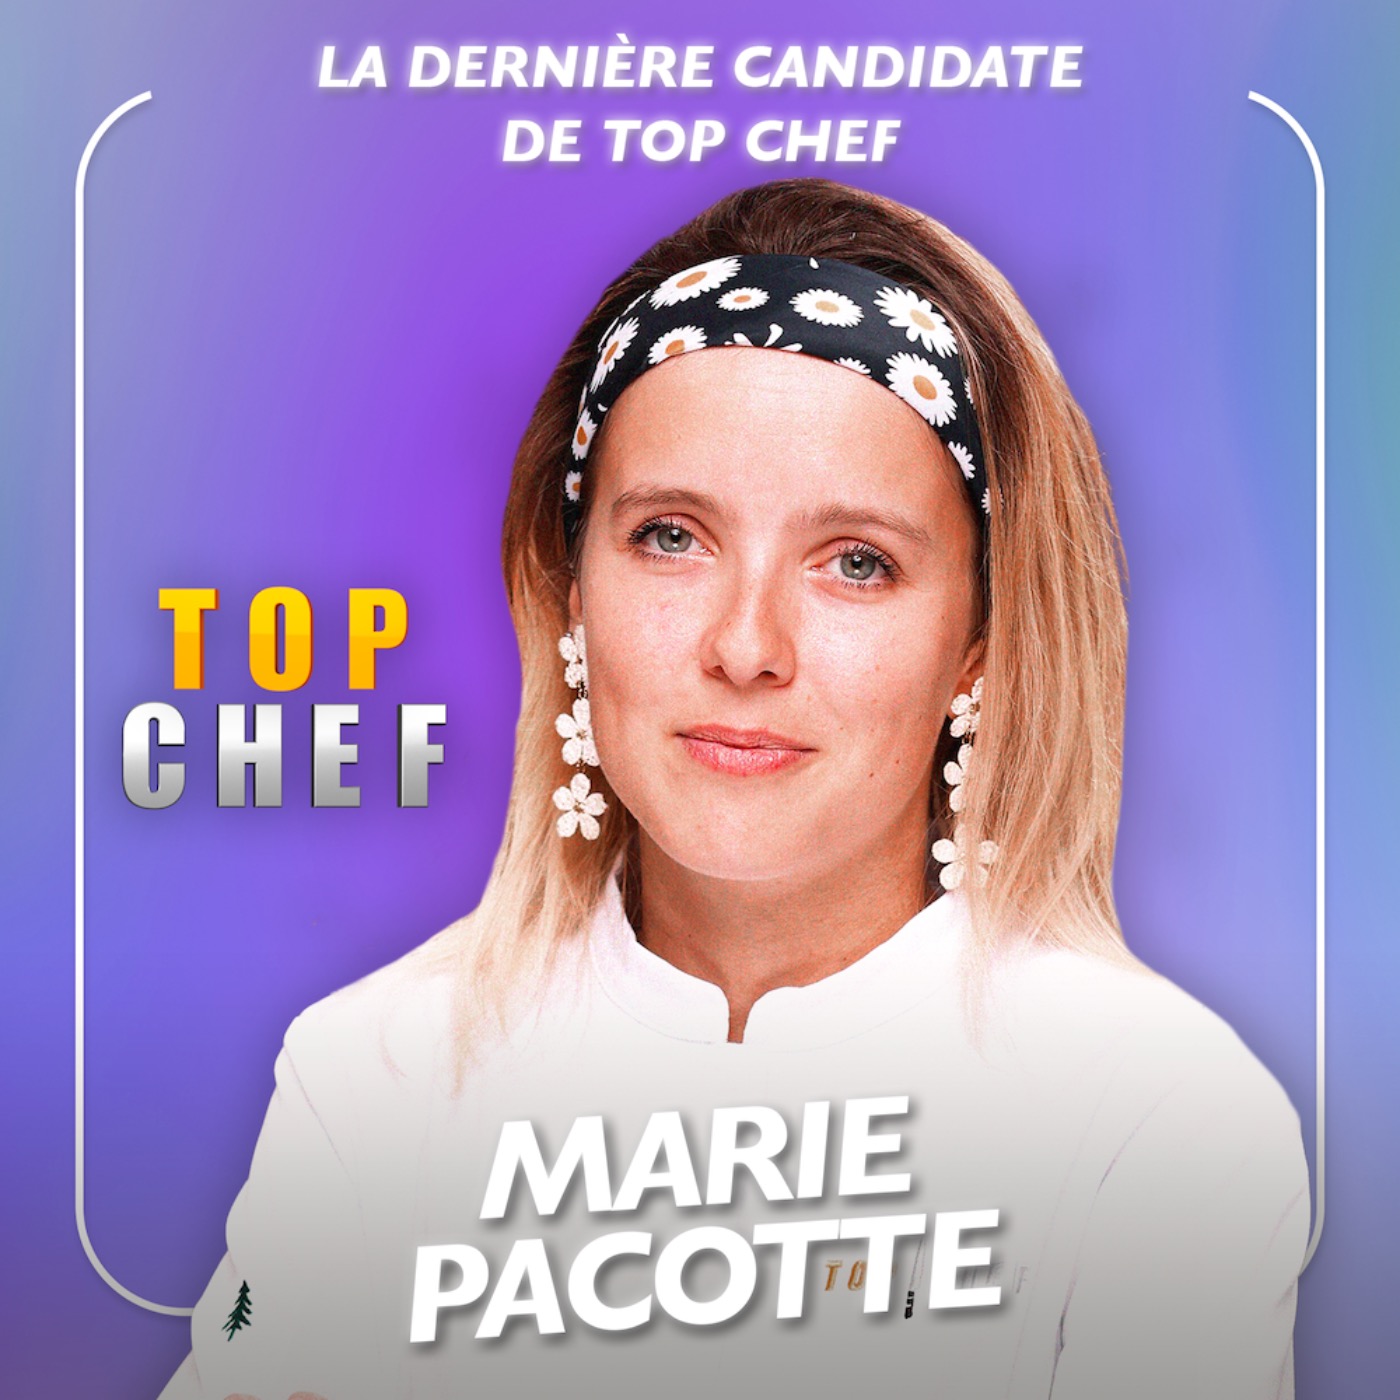 « La dernière candidate de Top Chef - Marie Pacotte se livre »